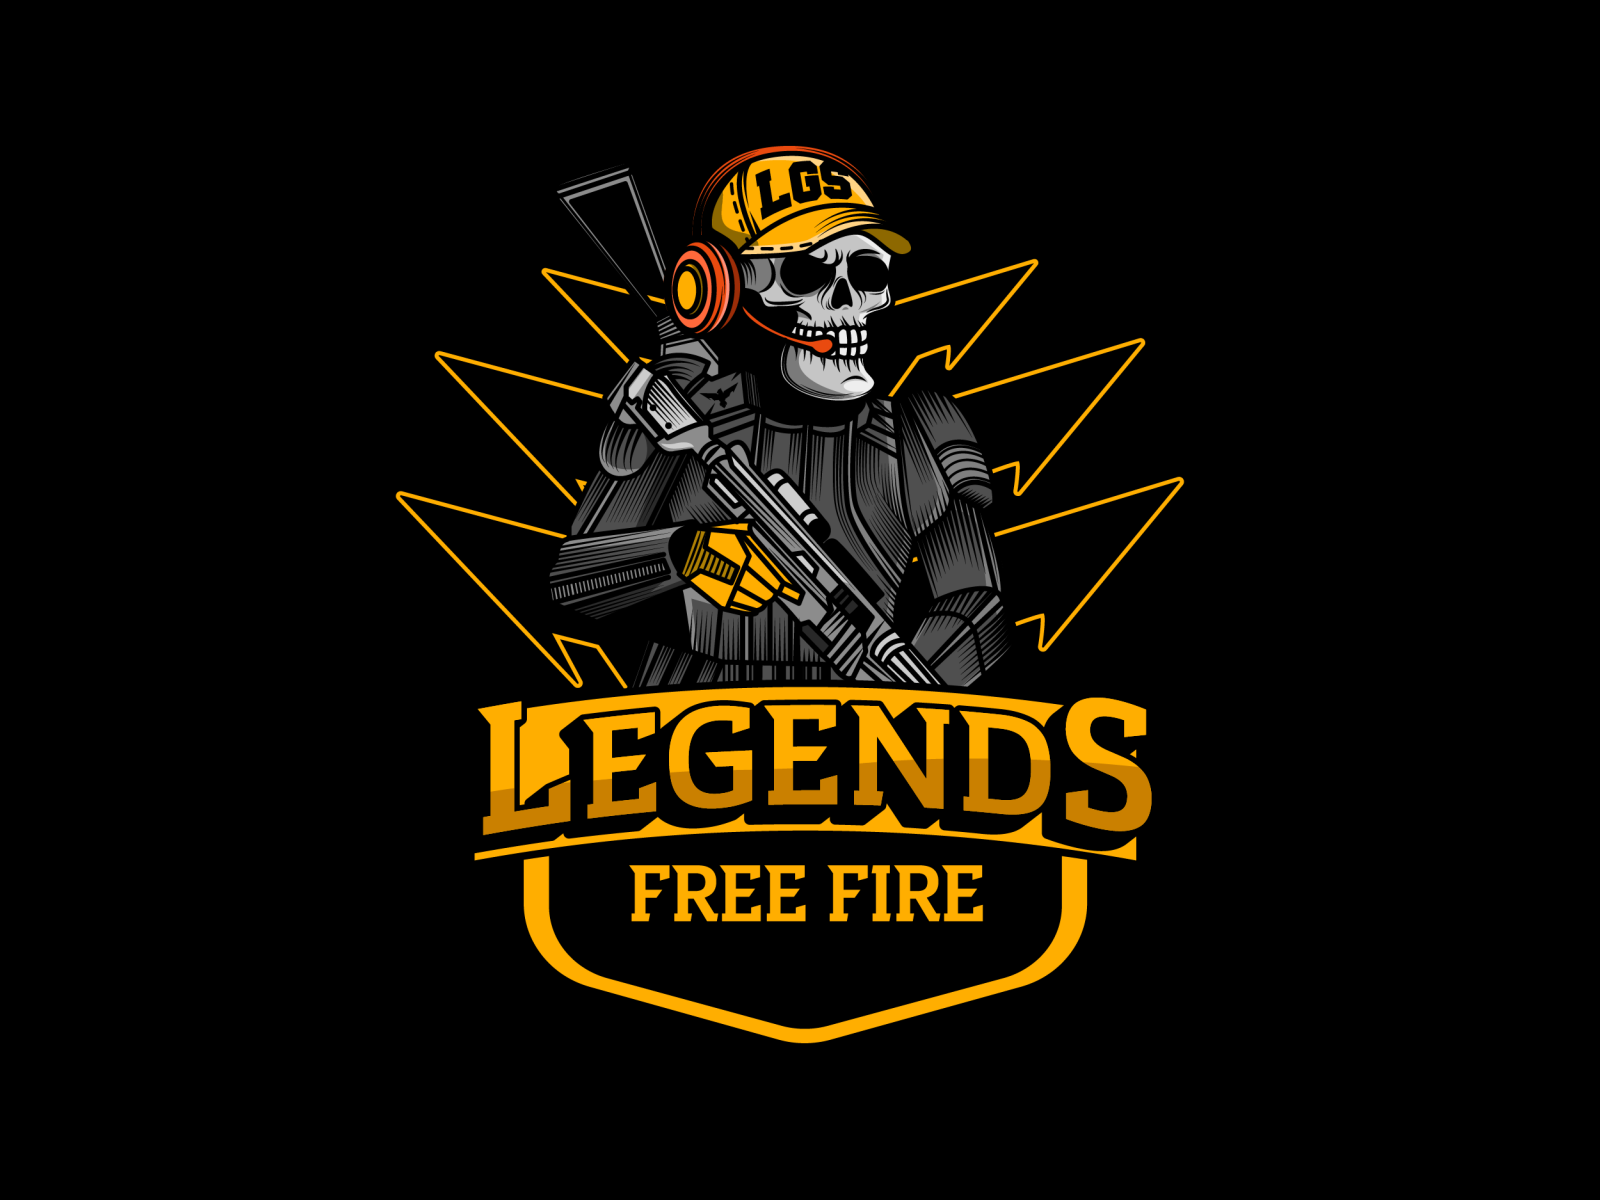 Legends Free Fire by Mr Chemel on Dribbble